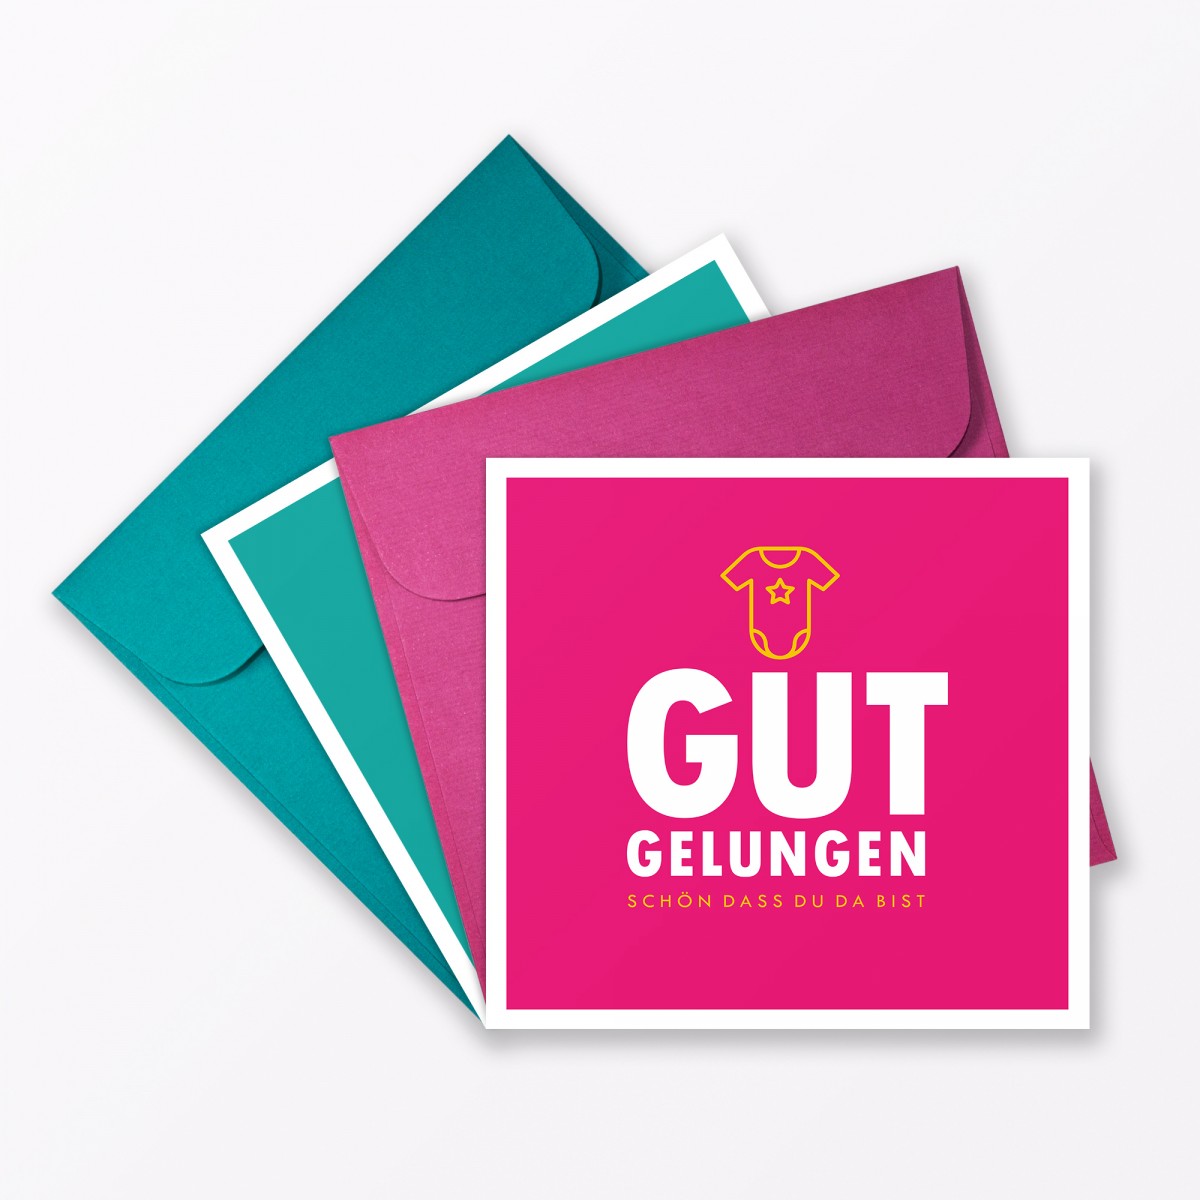 TYPOP 2-teiliges Set Babykarte "Gut gelungen" Türkis + Pink quadratisch inkl. Umschläge